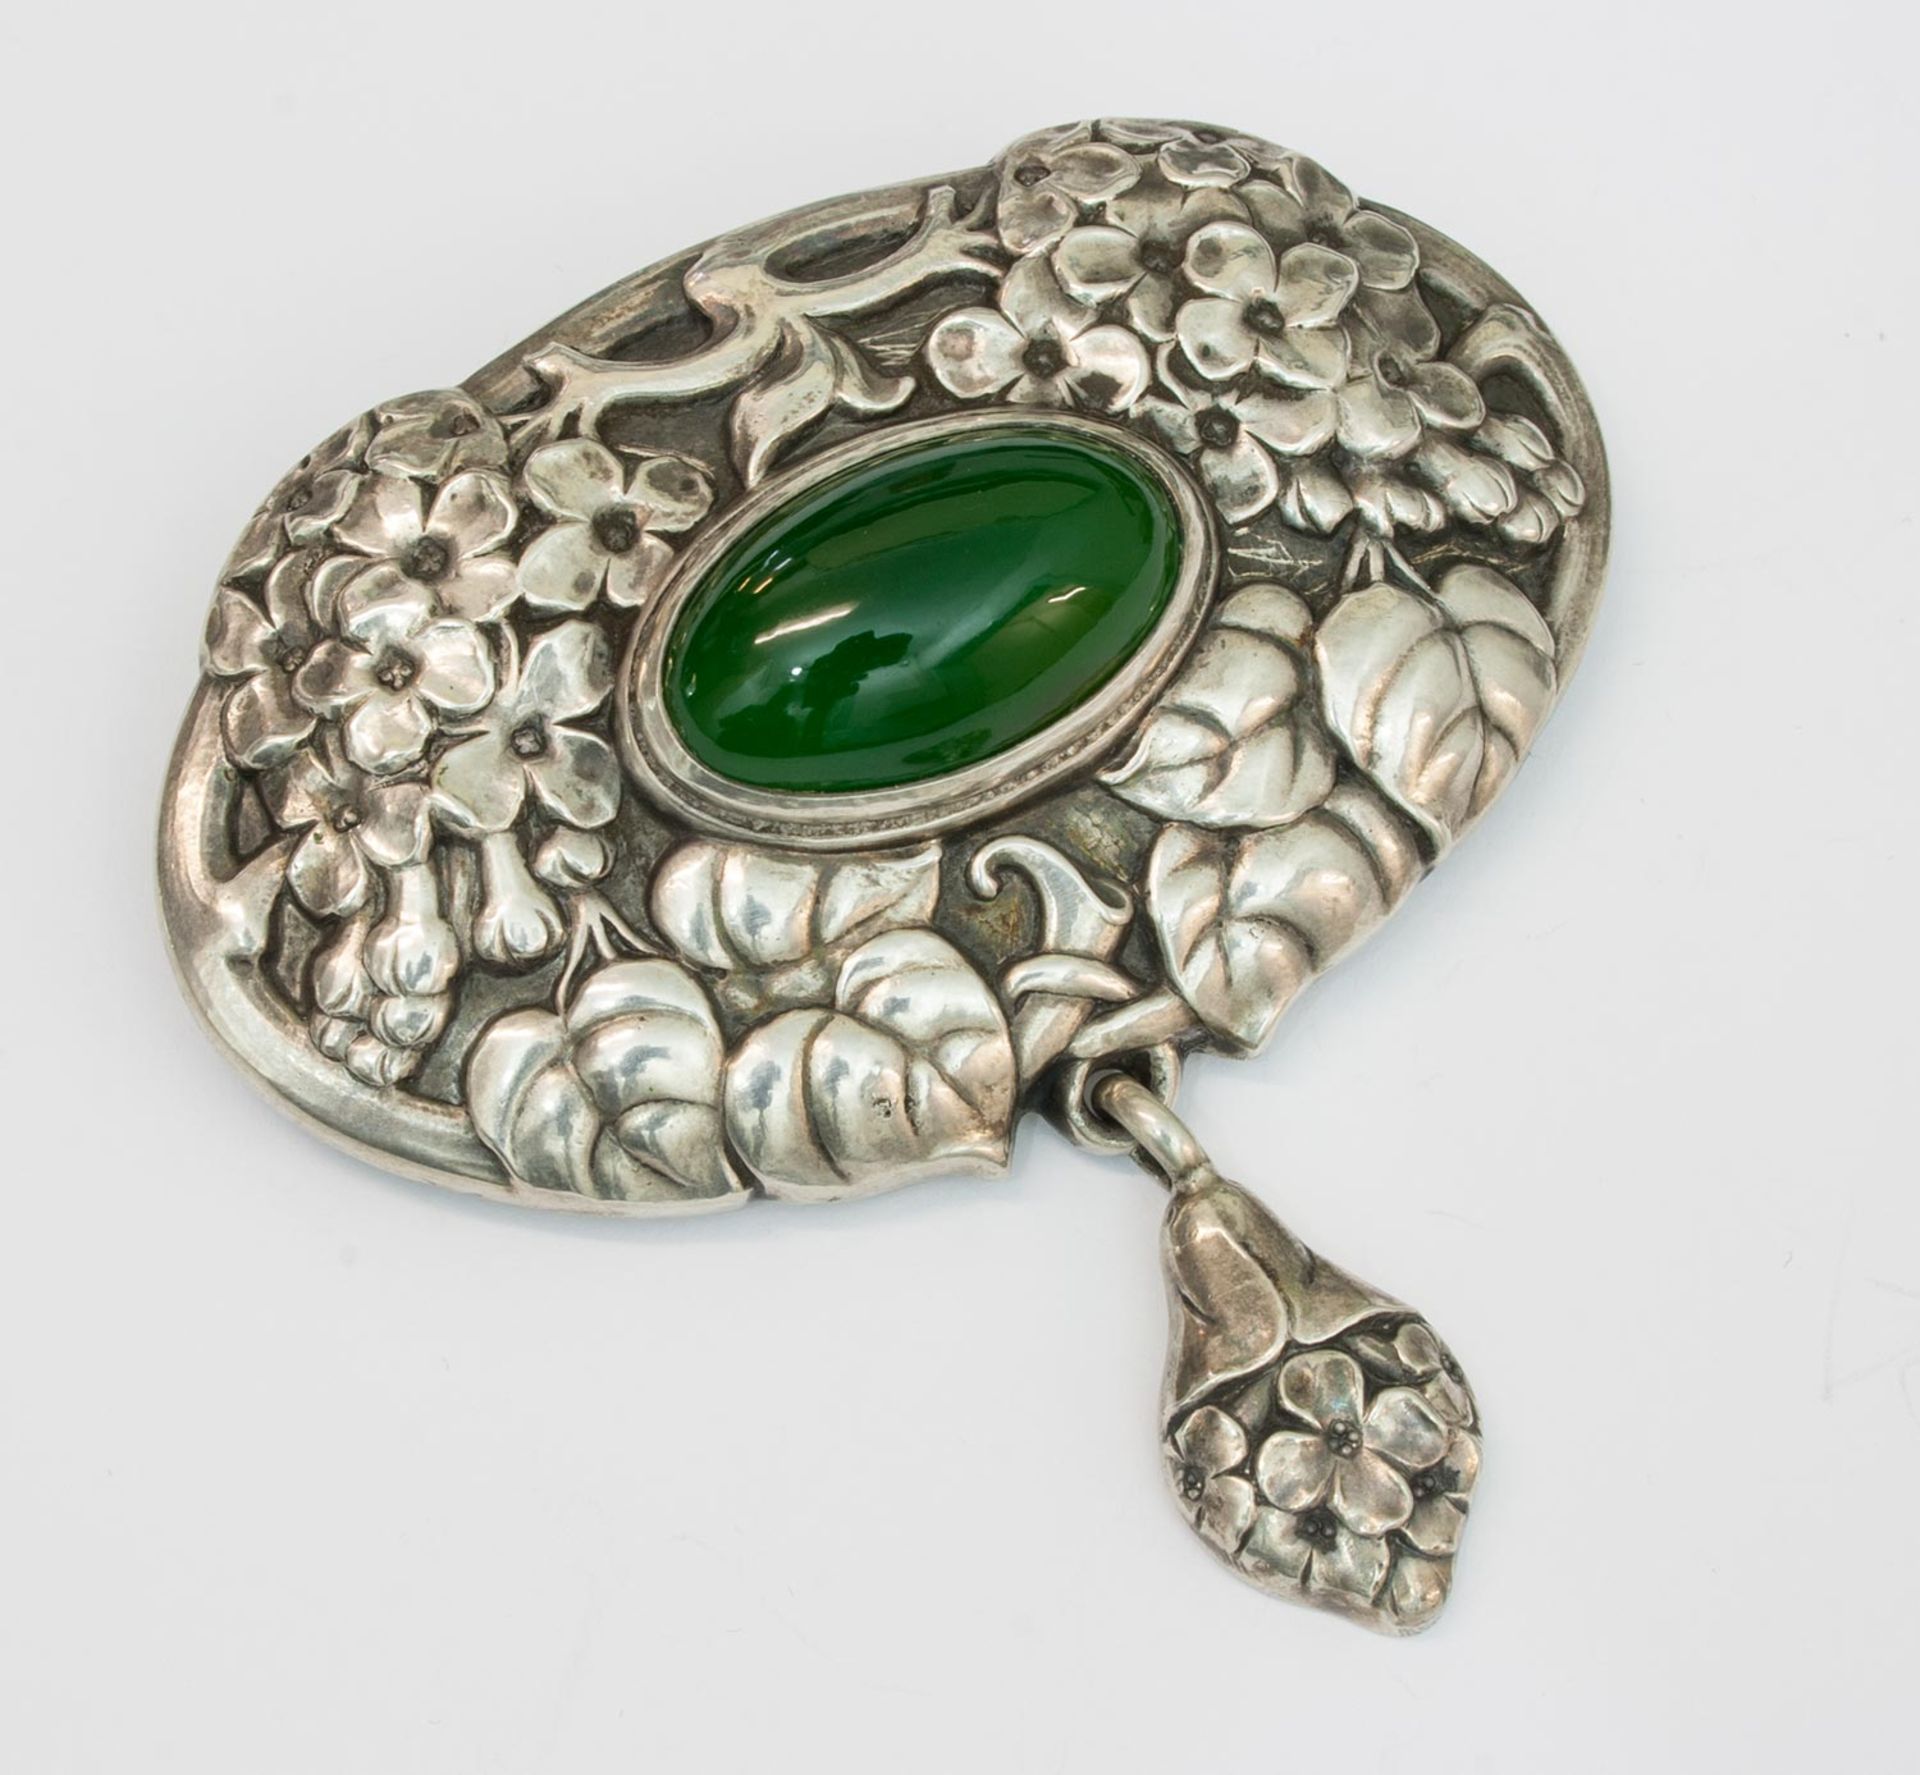 Brosche 800 Silber, 16,1 g, ovale Form mit Gehänge, halbplastischer floraler Dekor, mit einem ovalen